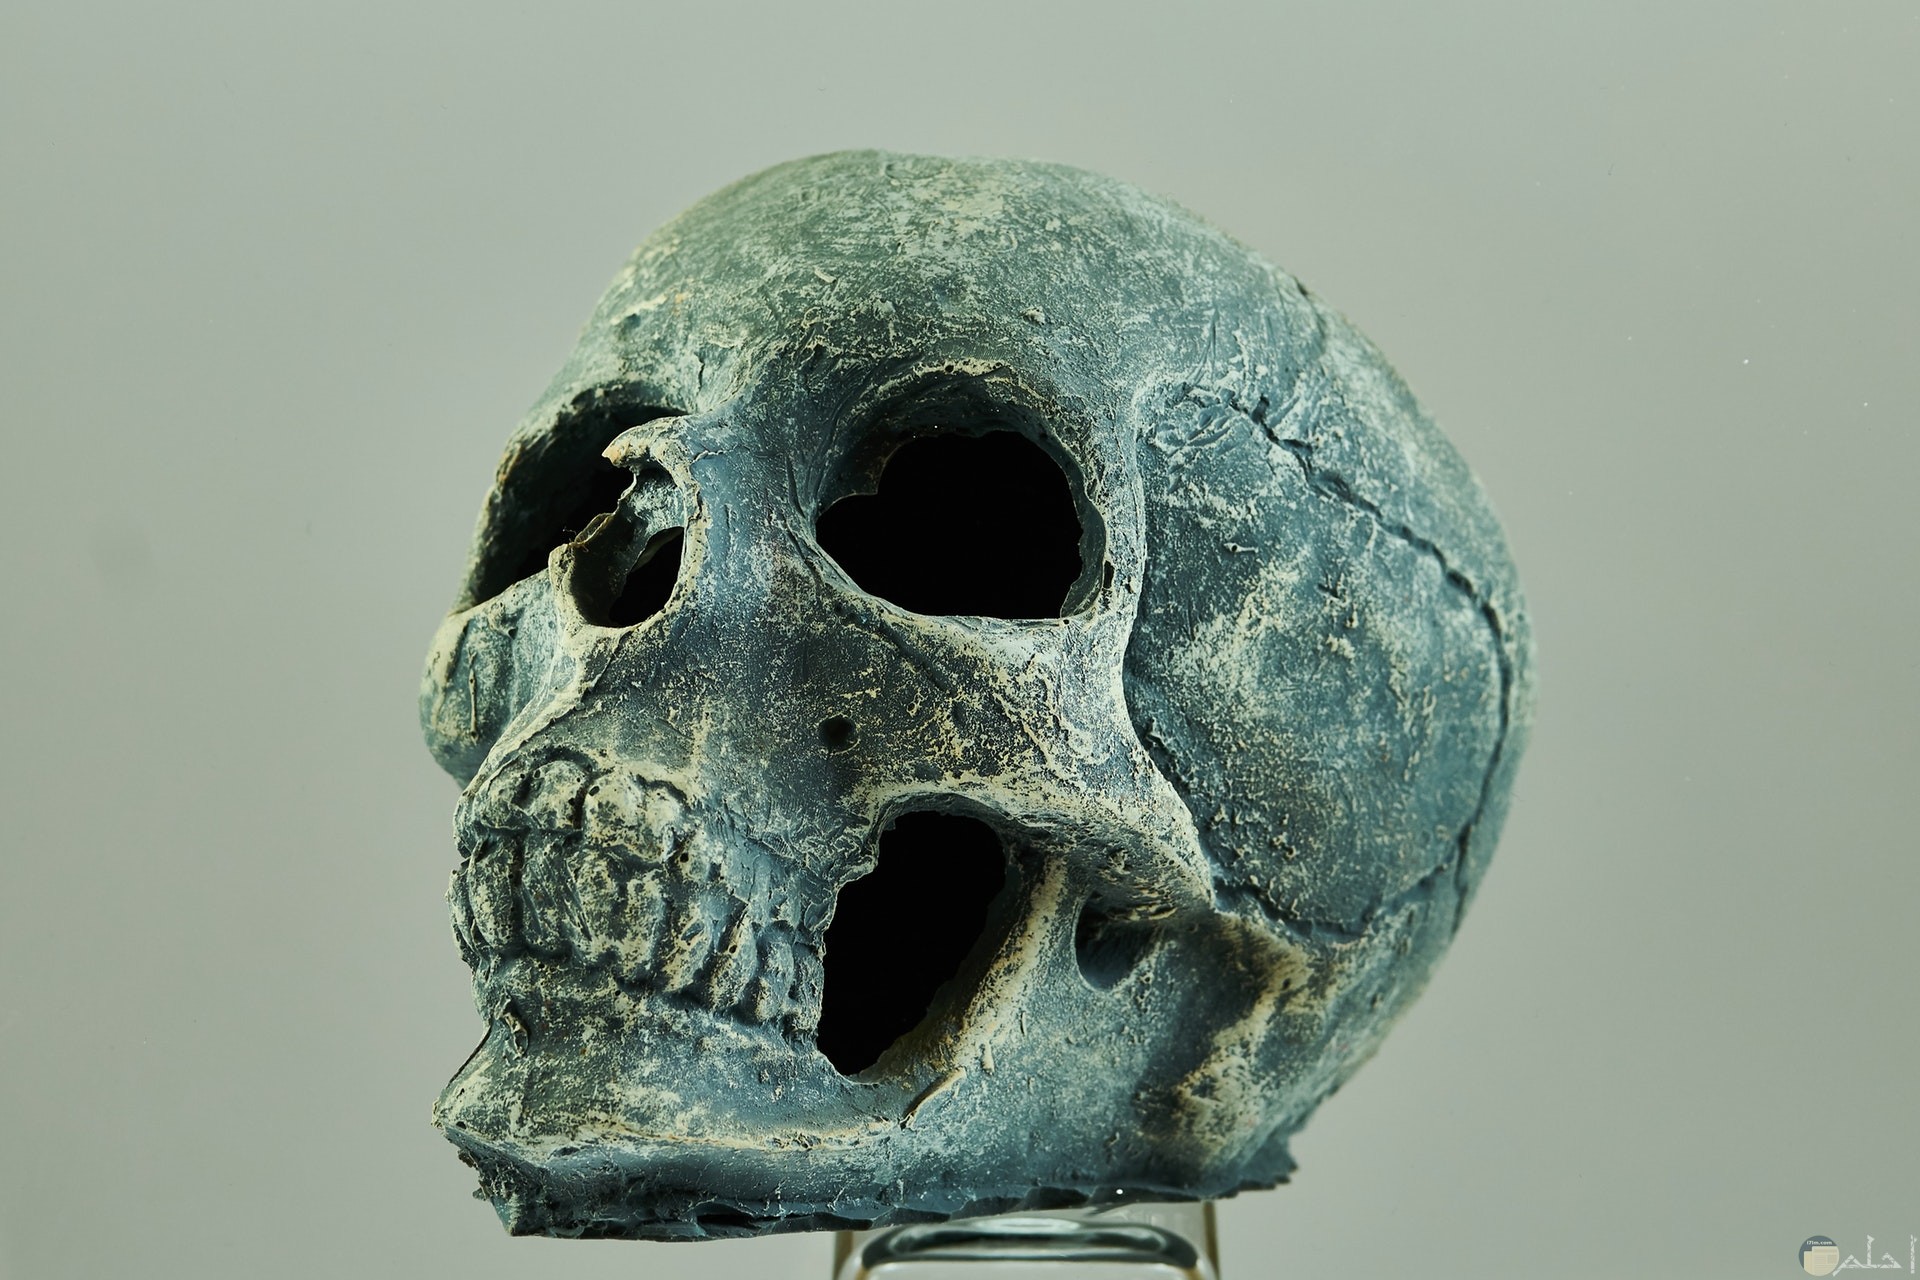 صورة مخيفة جدا لجمجمة إنسان ميت مع خلفية رمادية